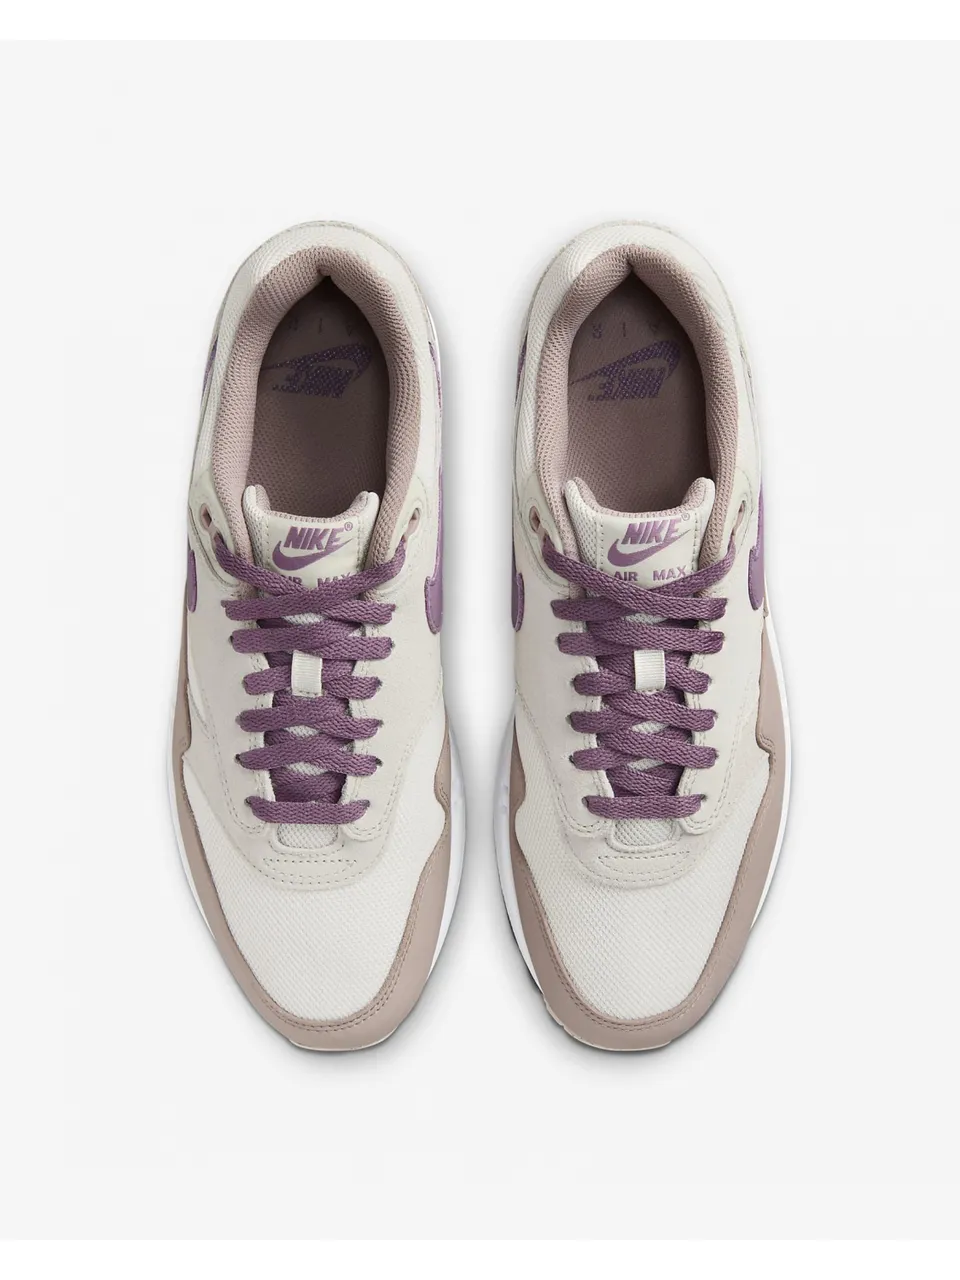 Nike Air Max 1 SC Violet Dust Sneakers